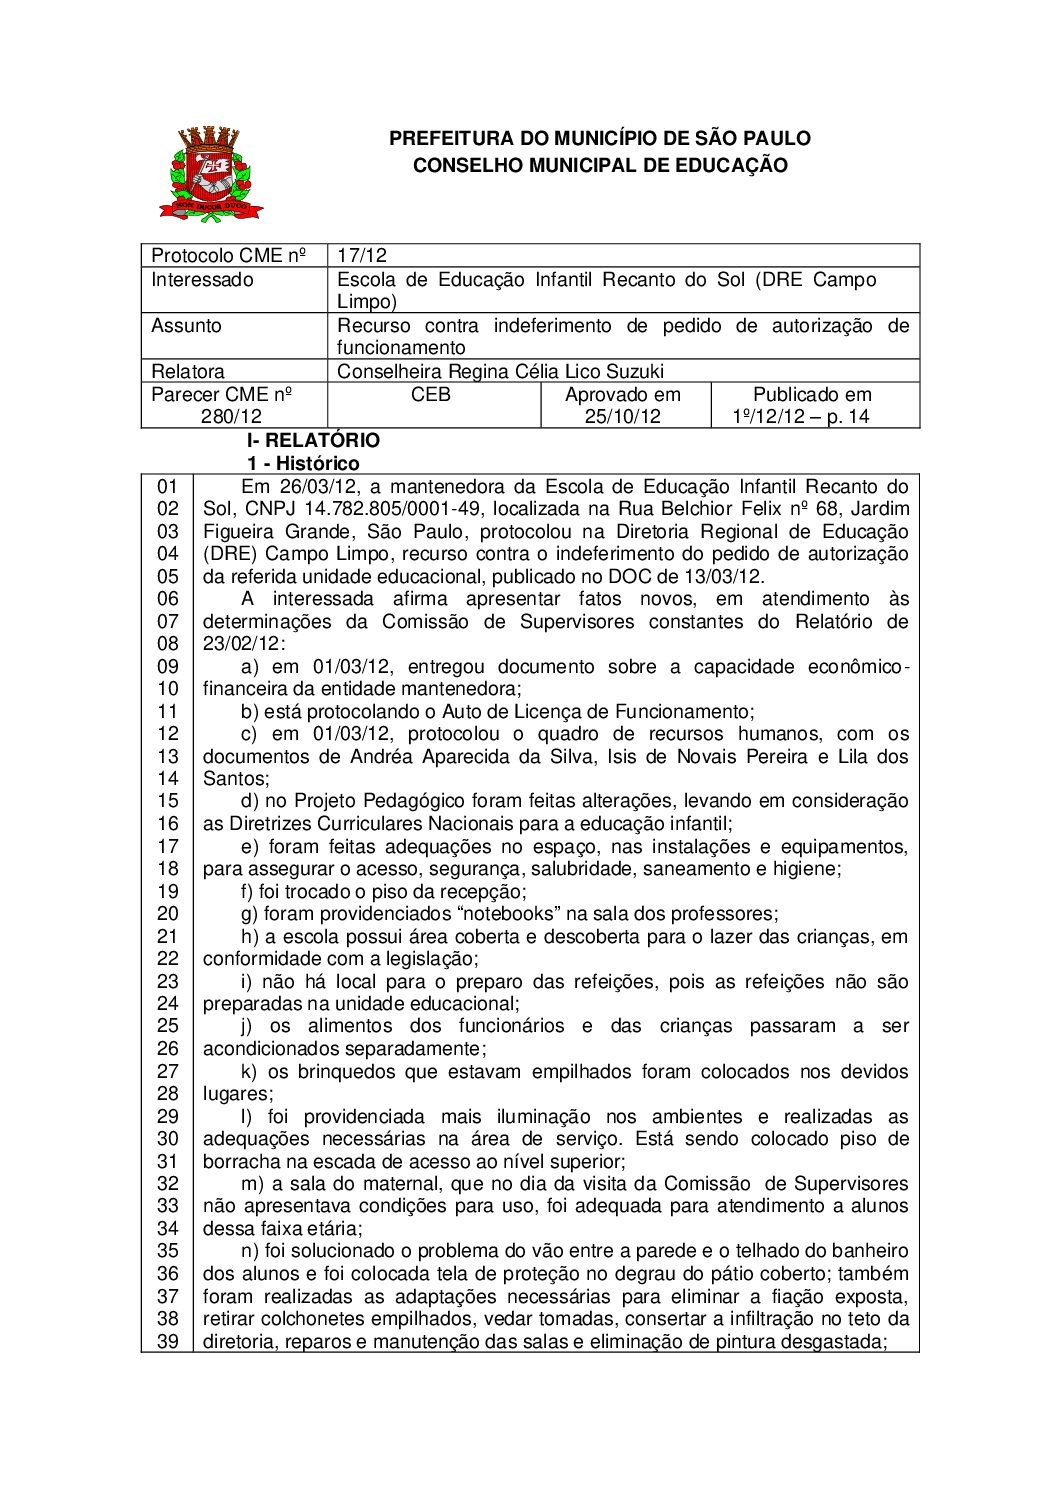 Parecer CME nº 280/2012 - Escola de Educação Infantil Recanto do Sol (DRE Campo Limpo) - Recurso contra indeferimento de pedido de autorização de funcionamento 